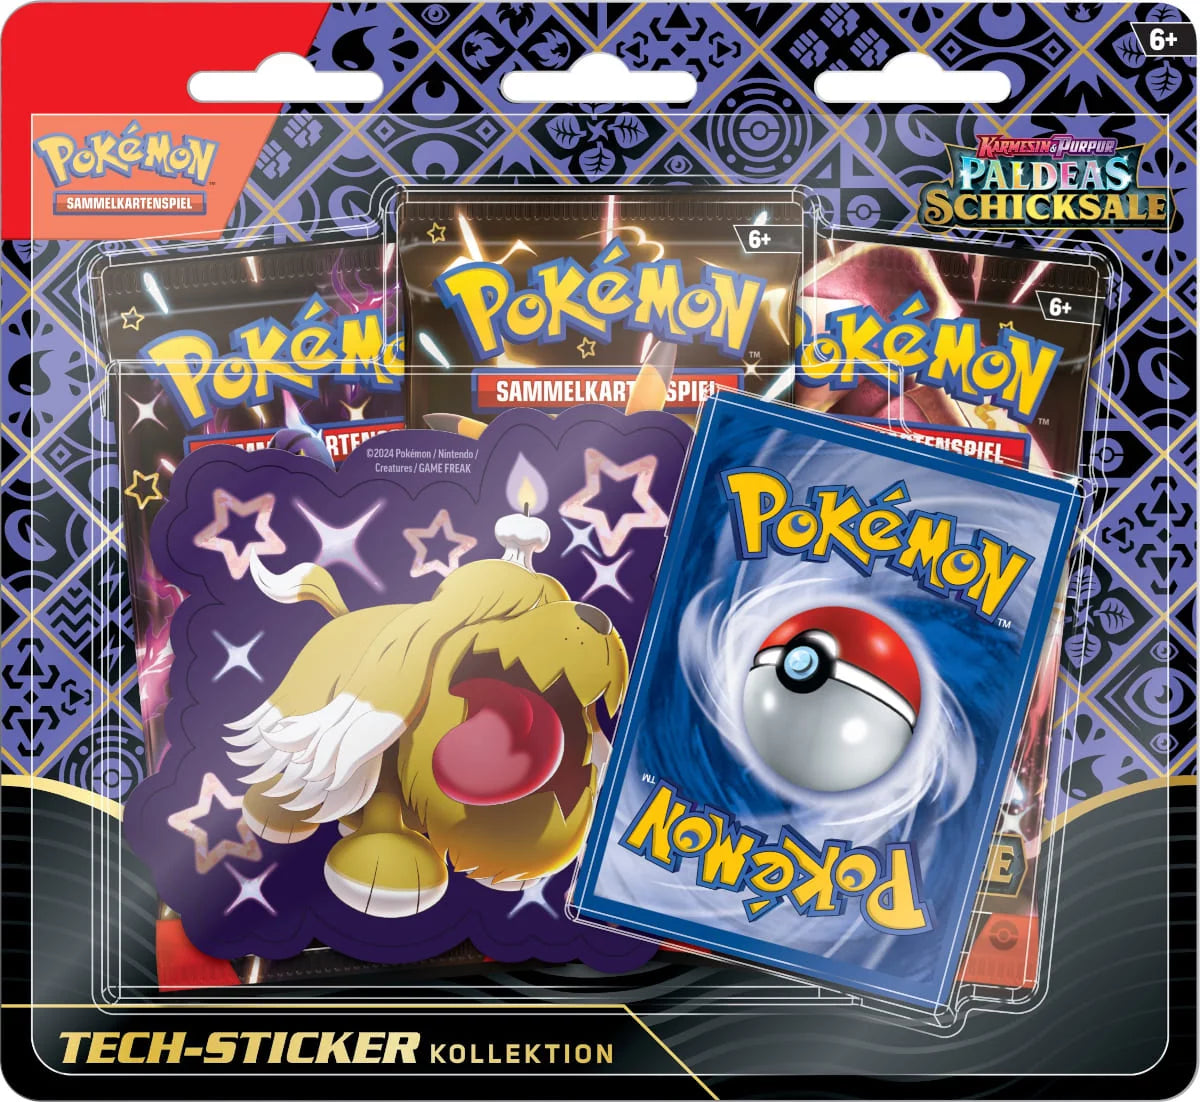 Pokémon Karmesin & Purpur Paldeas Schicksale - Tech-Sticker-Kollektion Schillerndes Gruff - DE